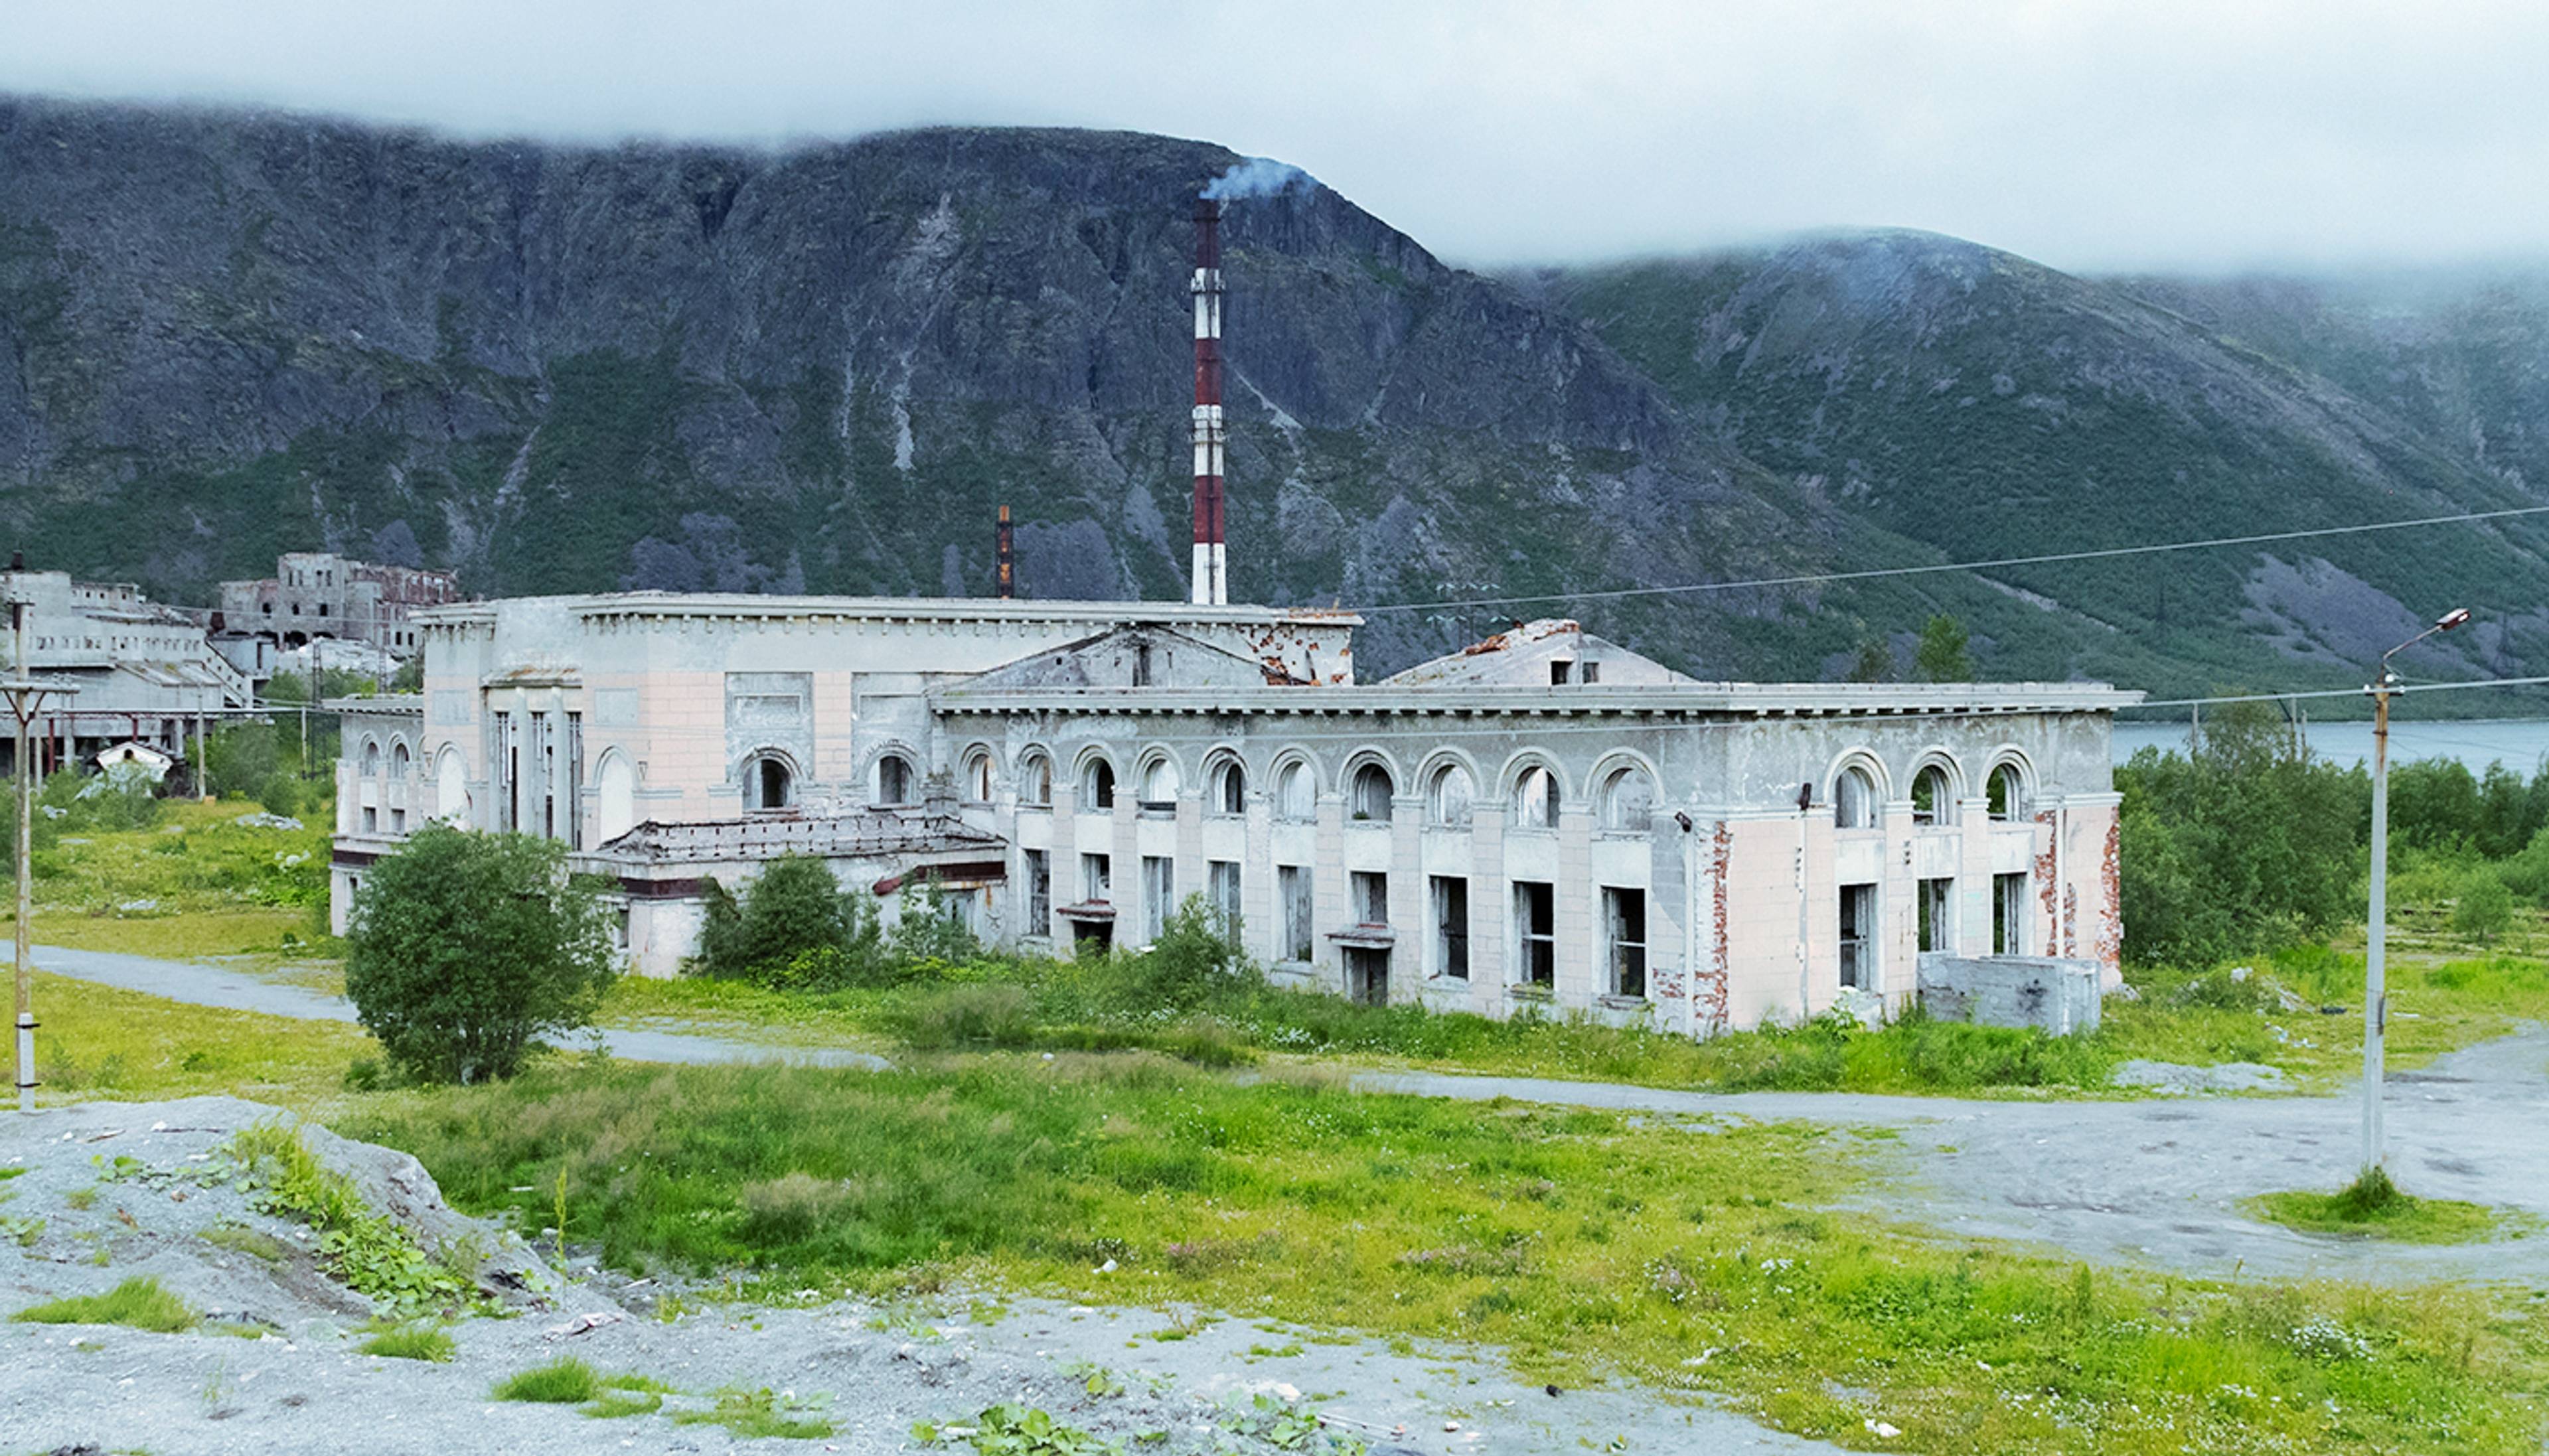 Abandoned railway station